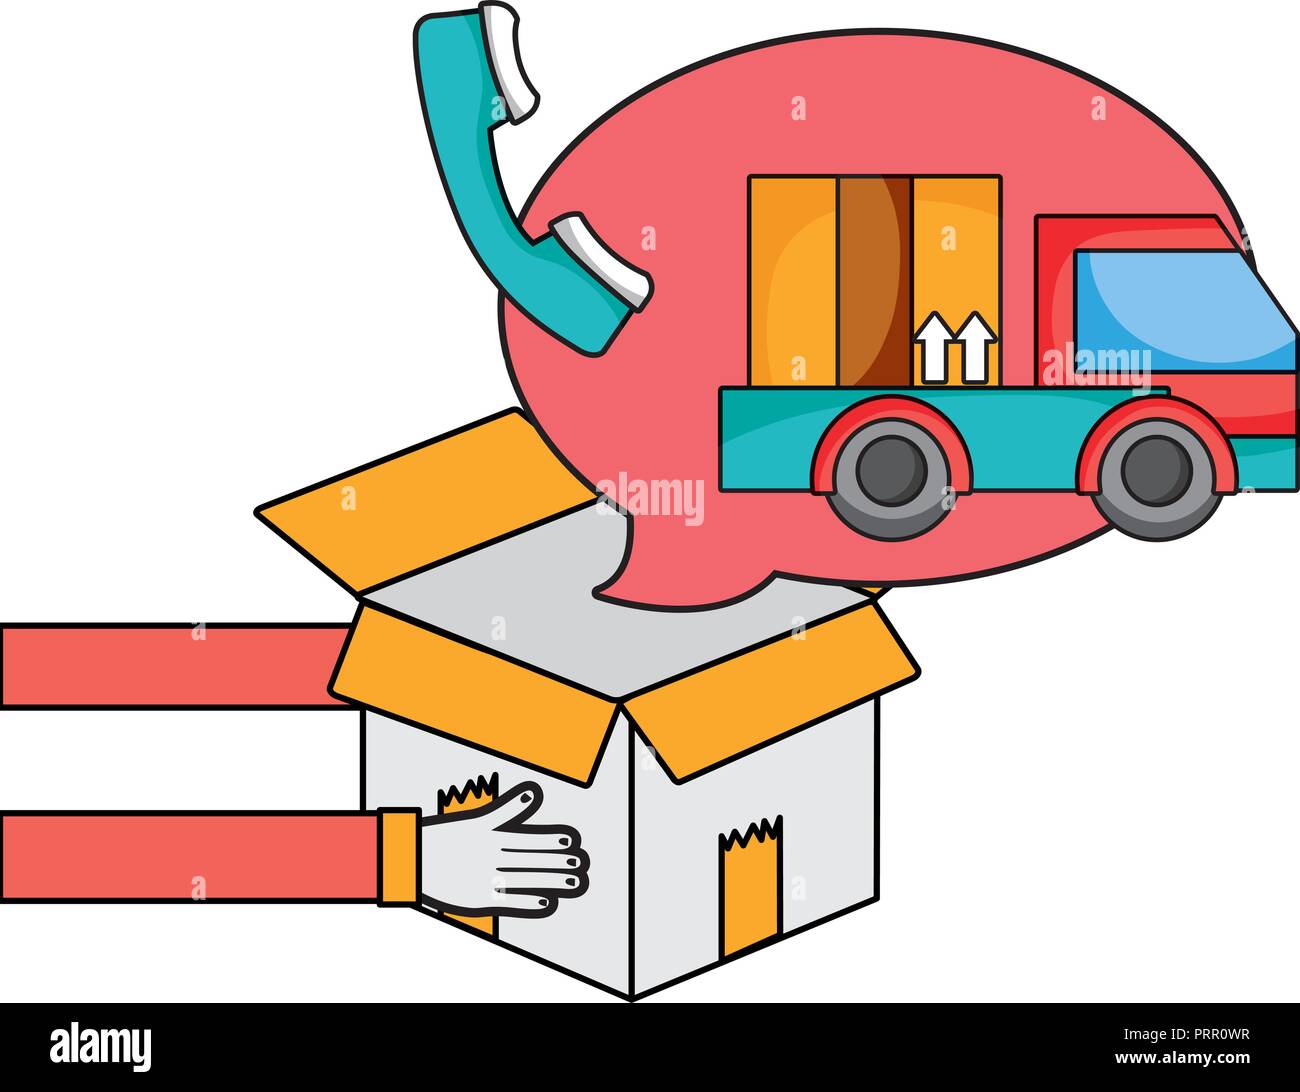 Delivery service cartoon Stock Vector